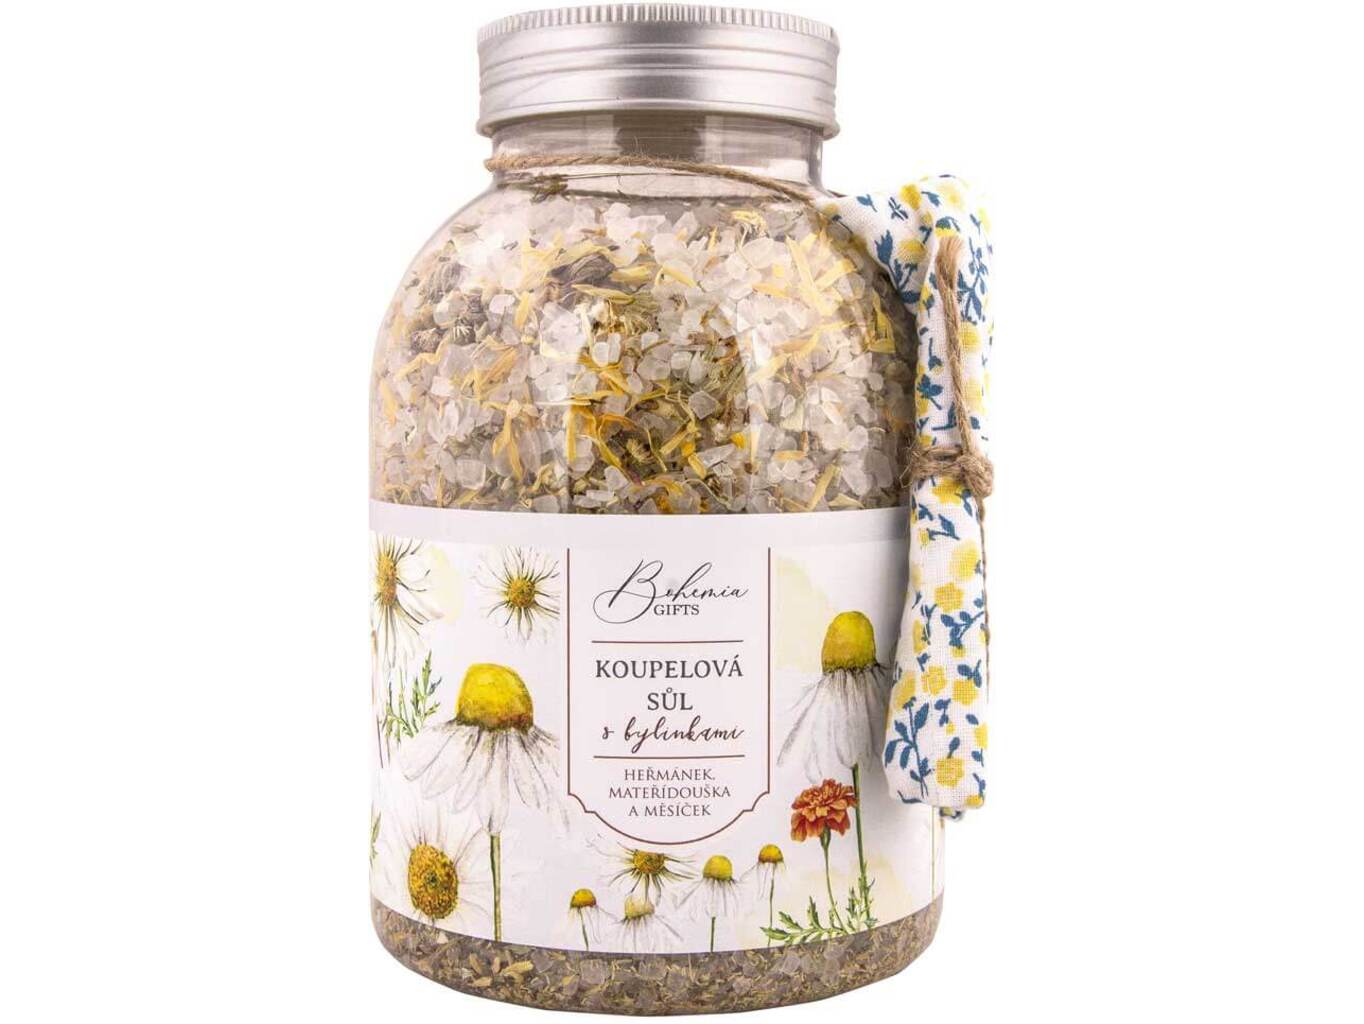 Bohemia Natur koupelová sůl s bylinkami heřmánek měsíček a mateřídouška 1200 g